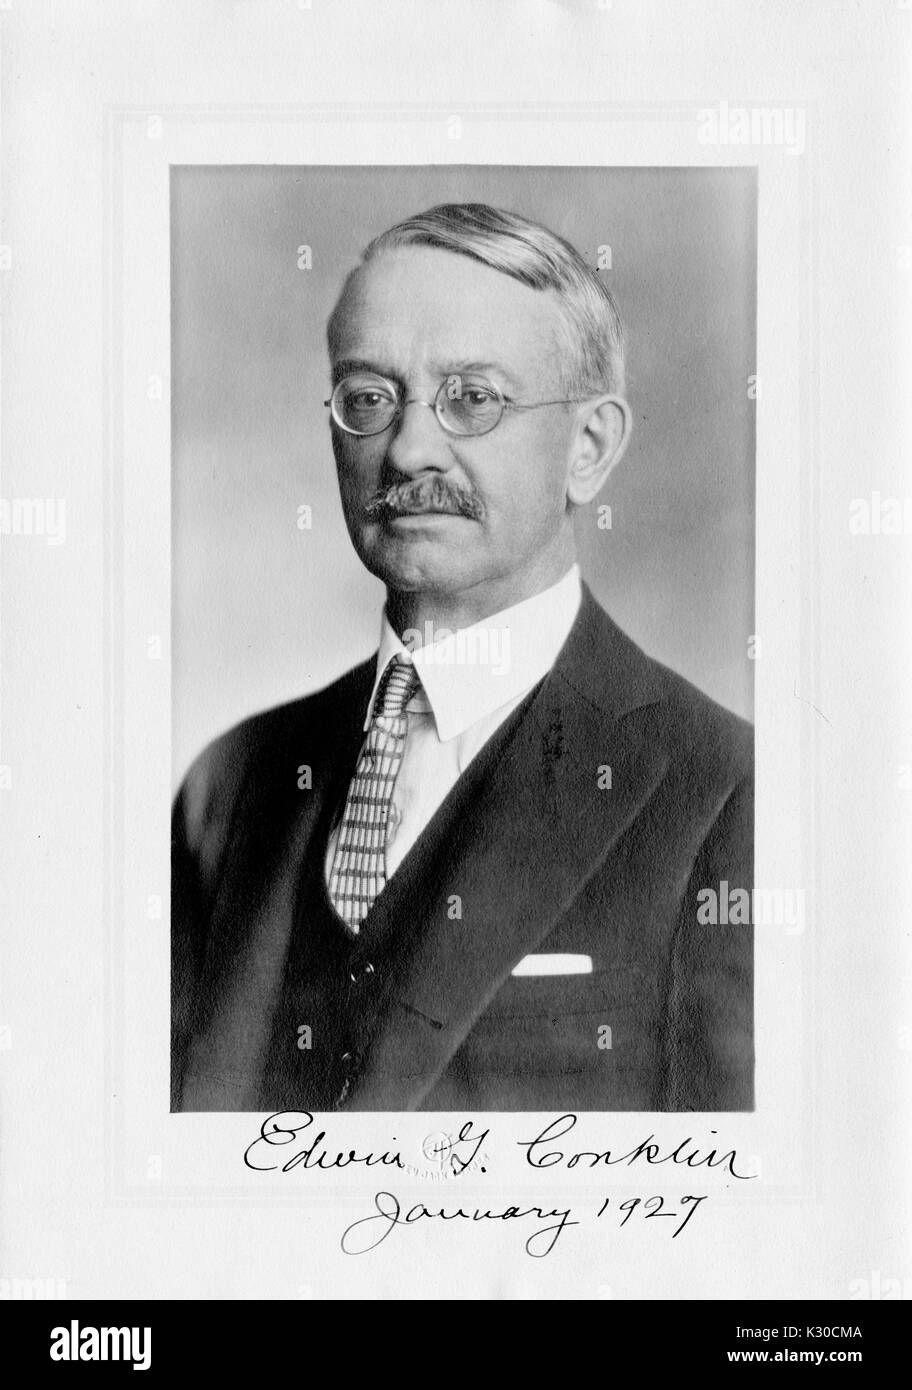 Portrait, la poitrine vers le haut, de Edwin Grant Conklin, zoologiste et biologiste à l'Université Johns Hopkins, souriant avec des lunettes, avec nom et date, Baltimore, Maryland, 1927. Banque D'Images